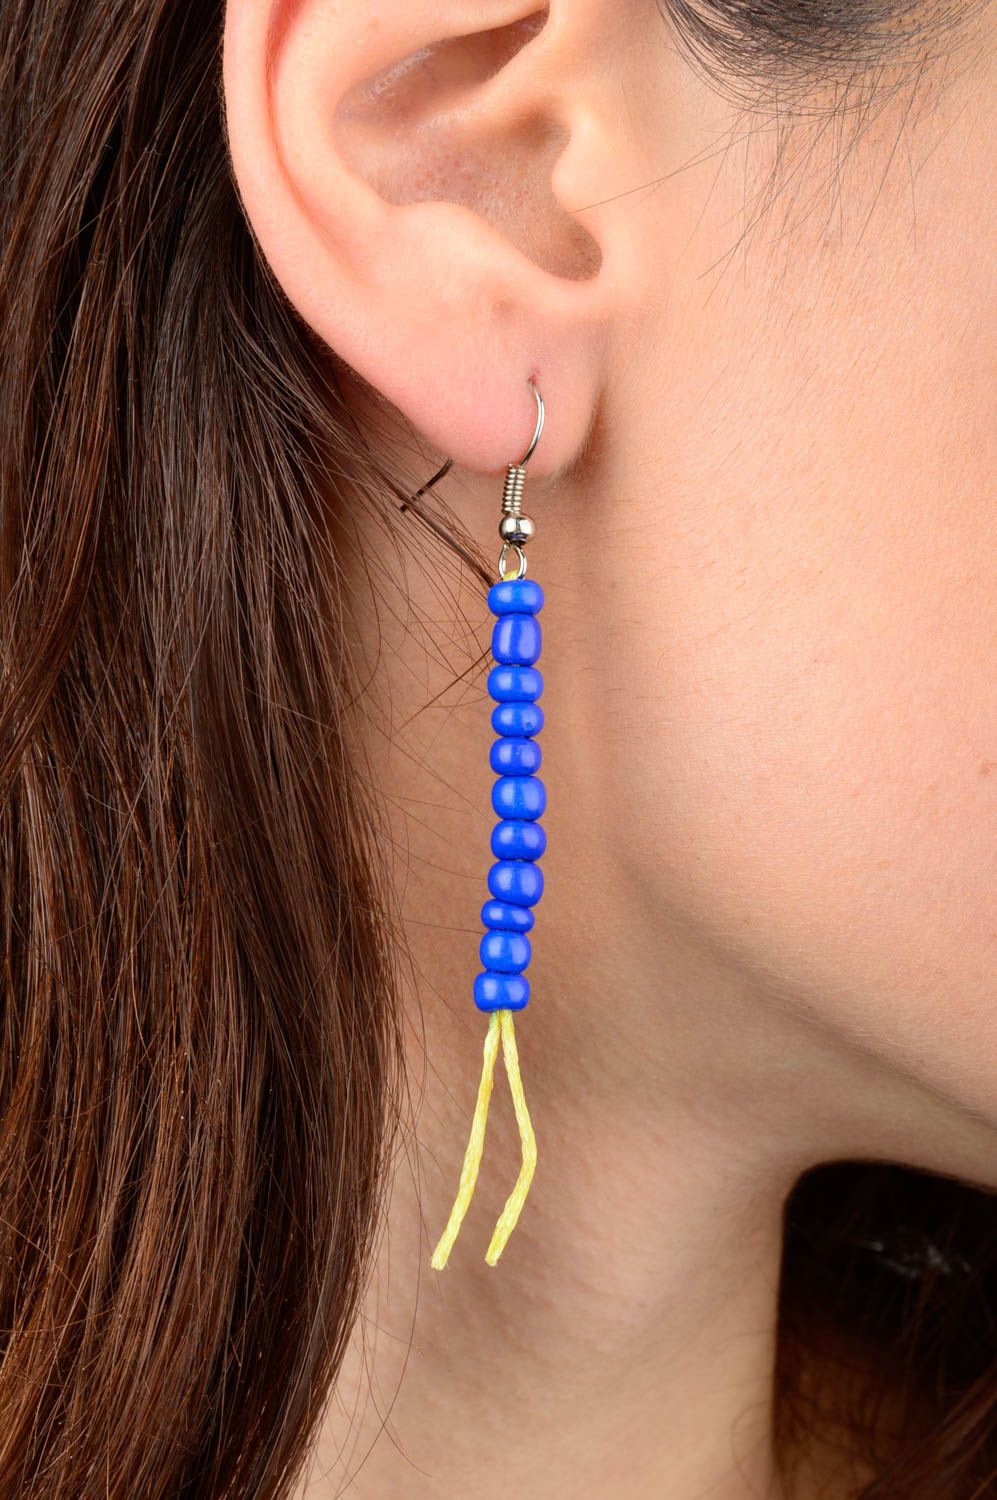 Handmade beads earrings designer earrings beaded earrings for girl gift ideas photo 2